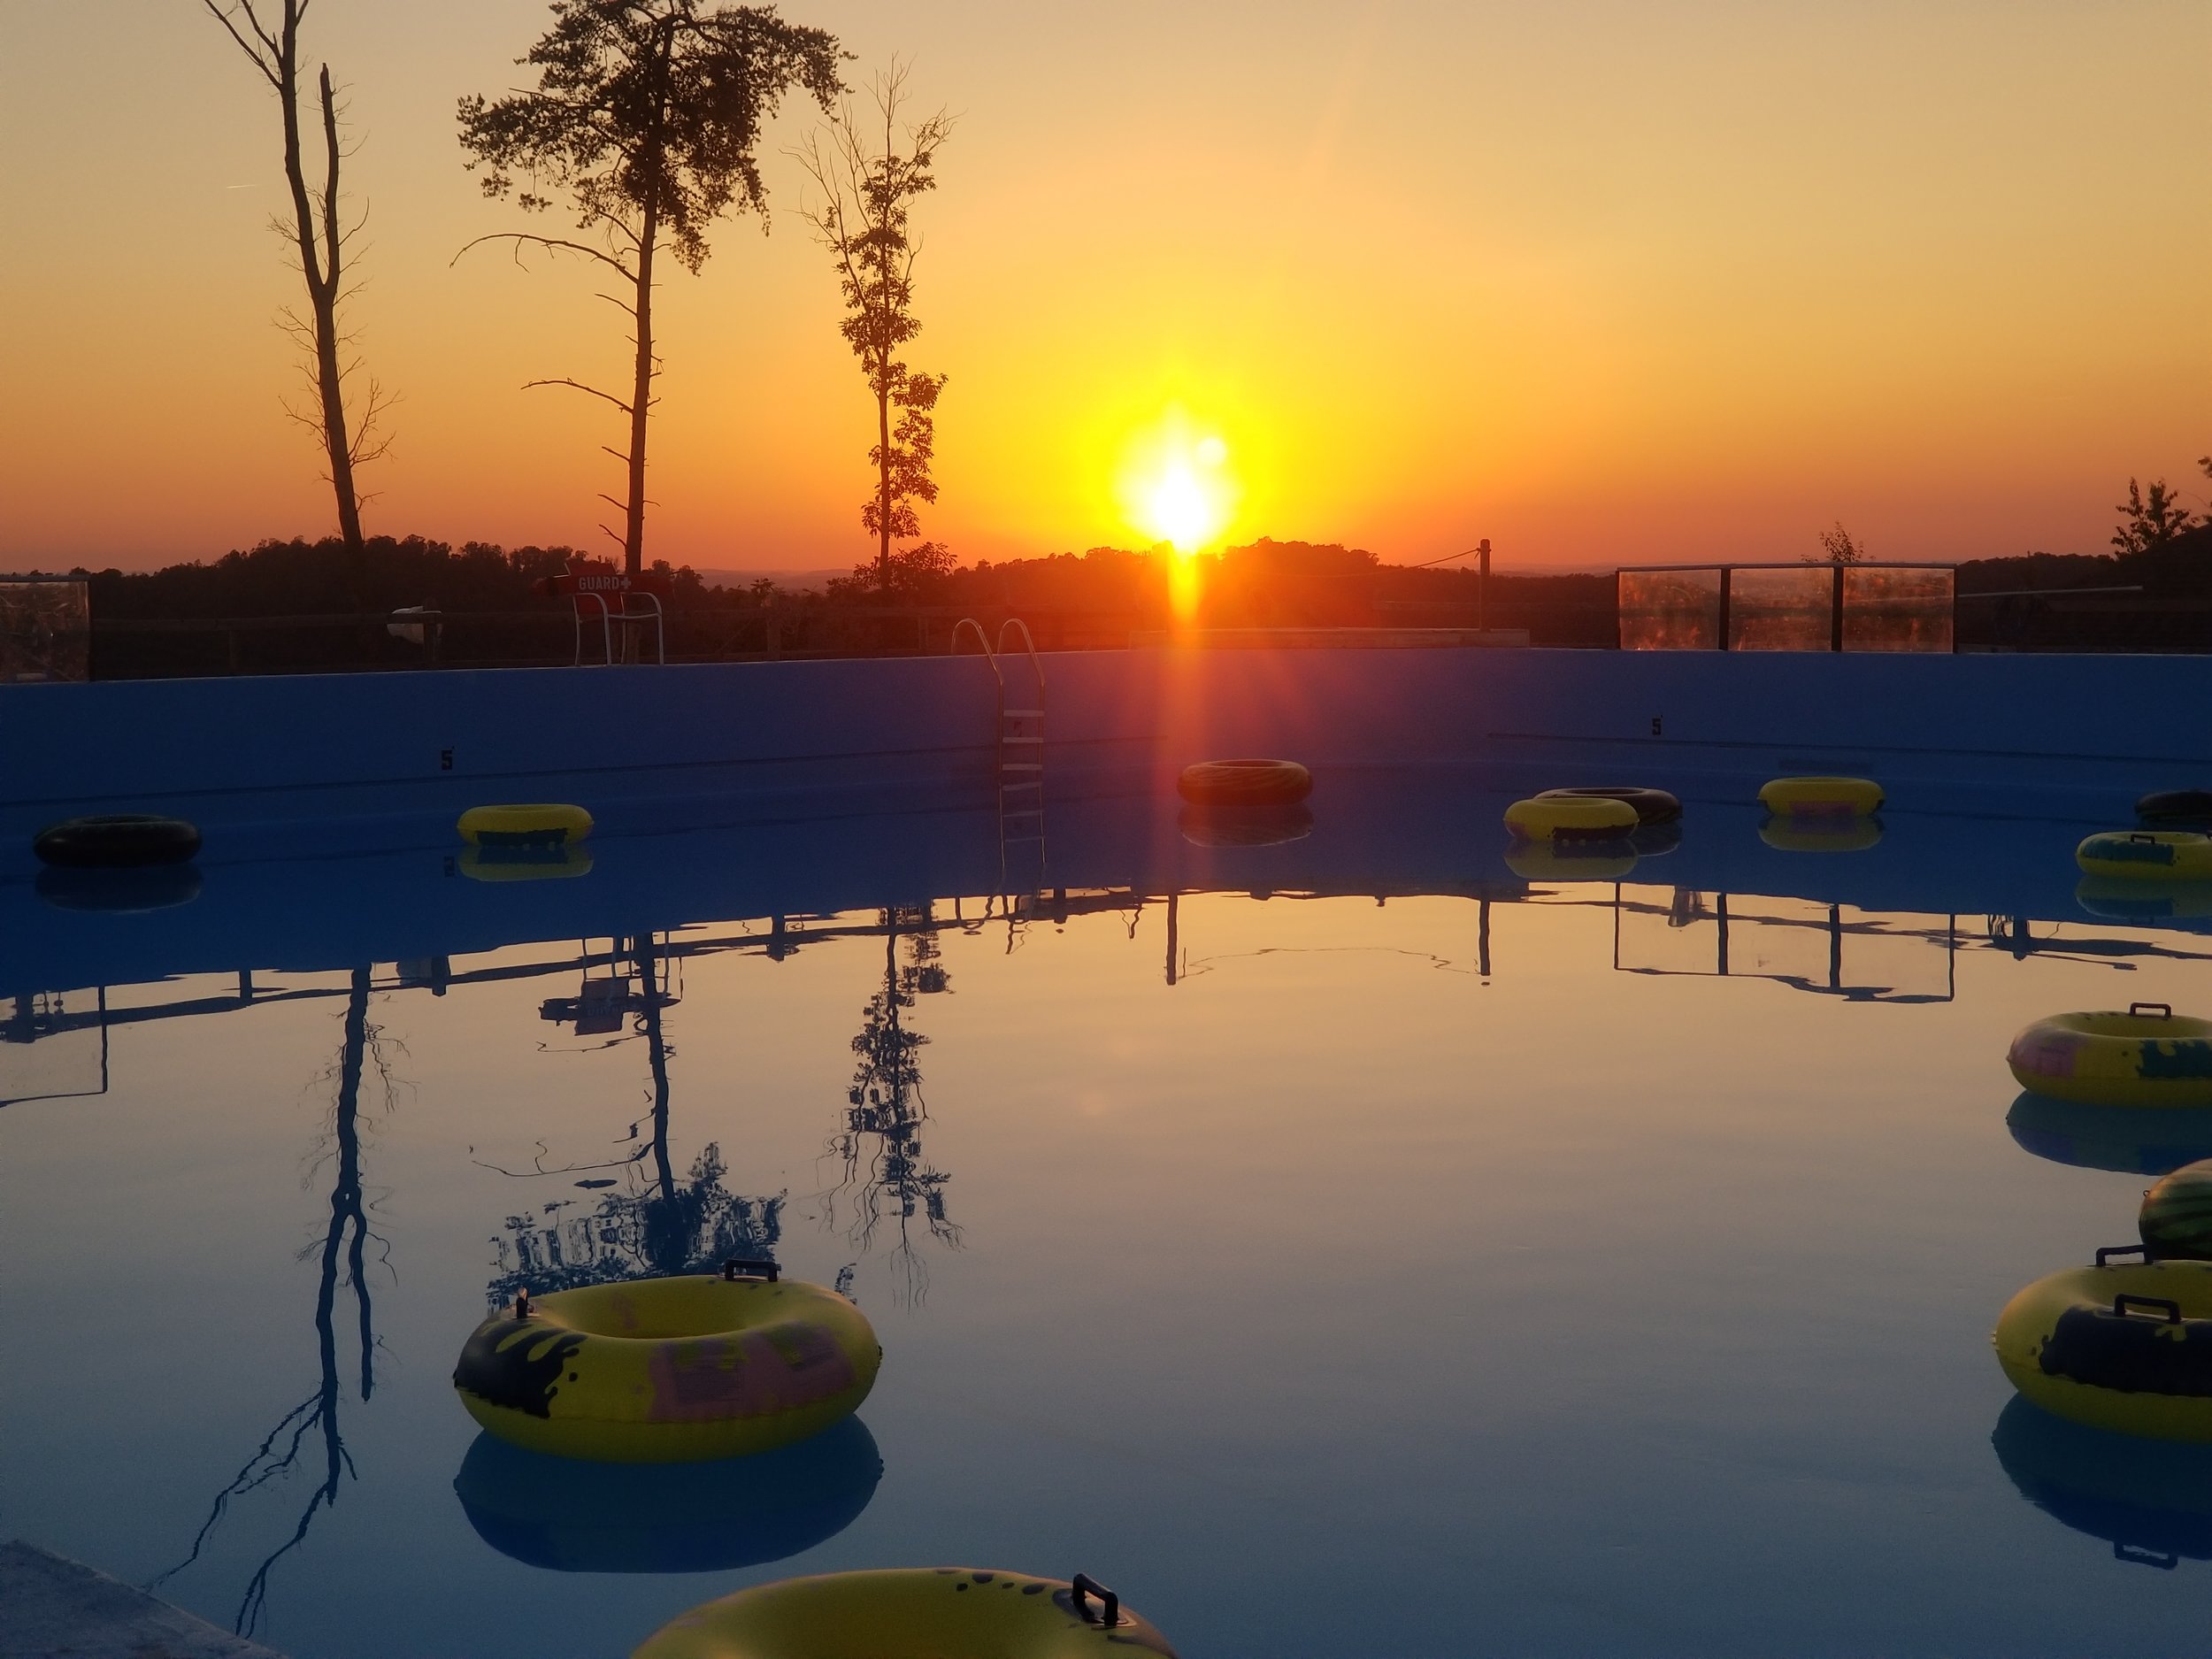 Pool at sunset.jpg